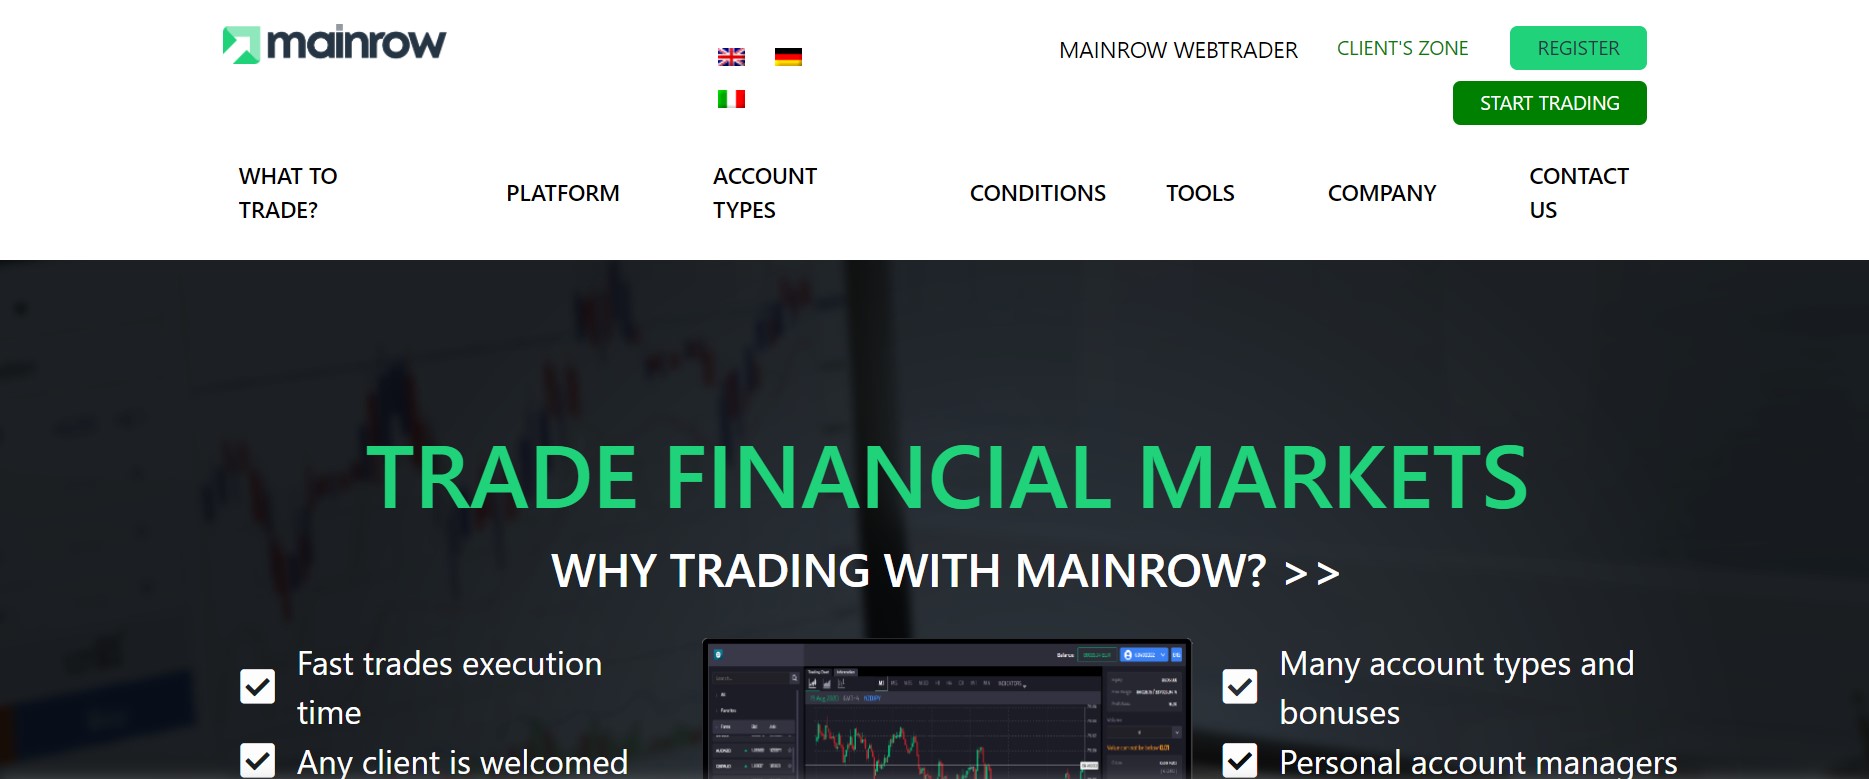 MAINROW website